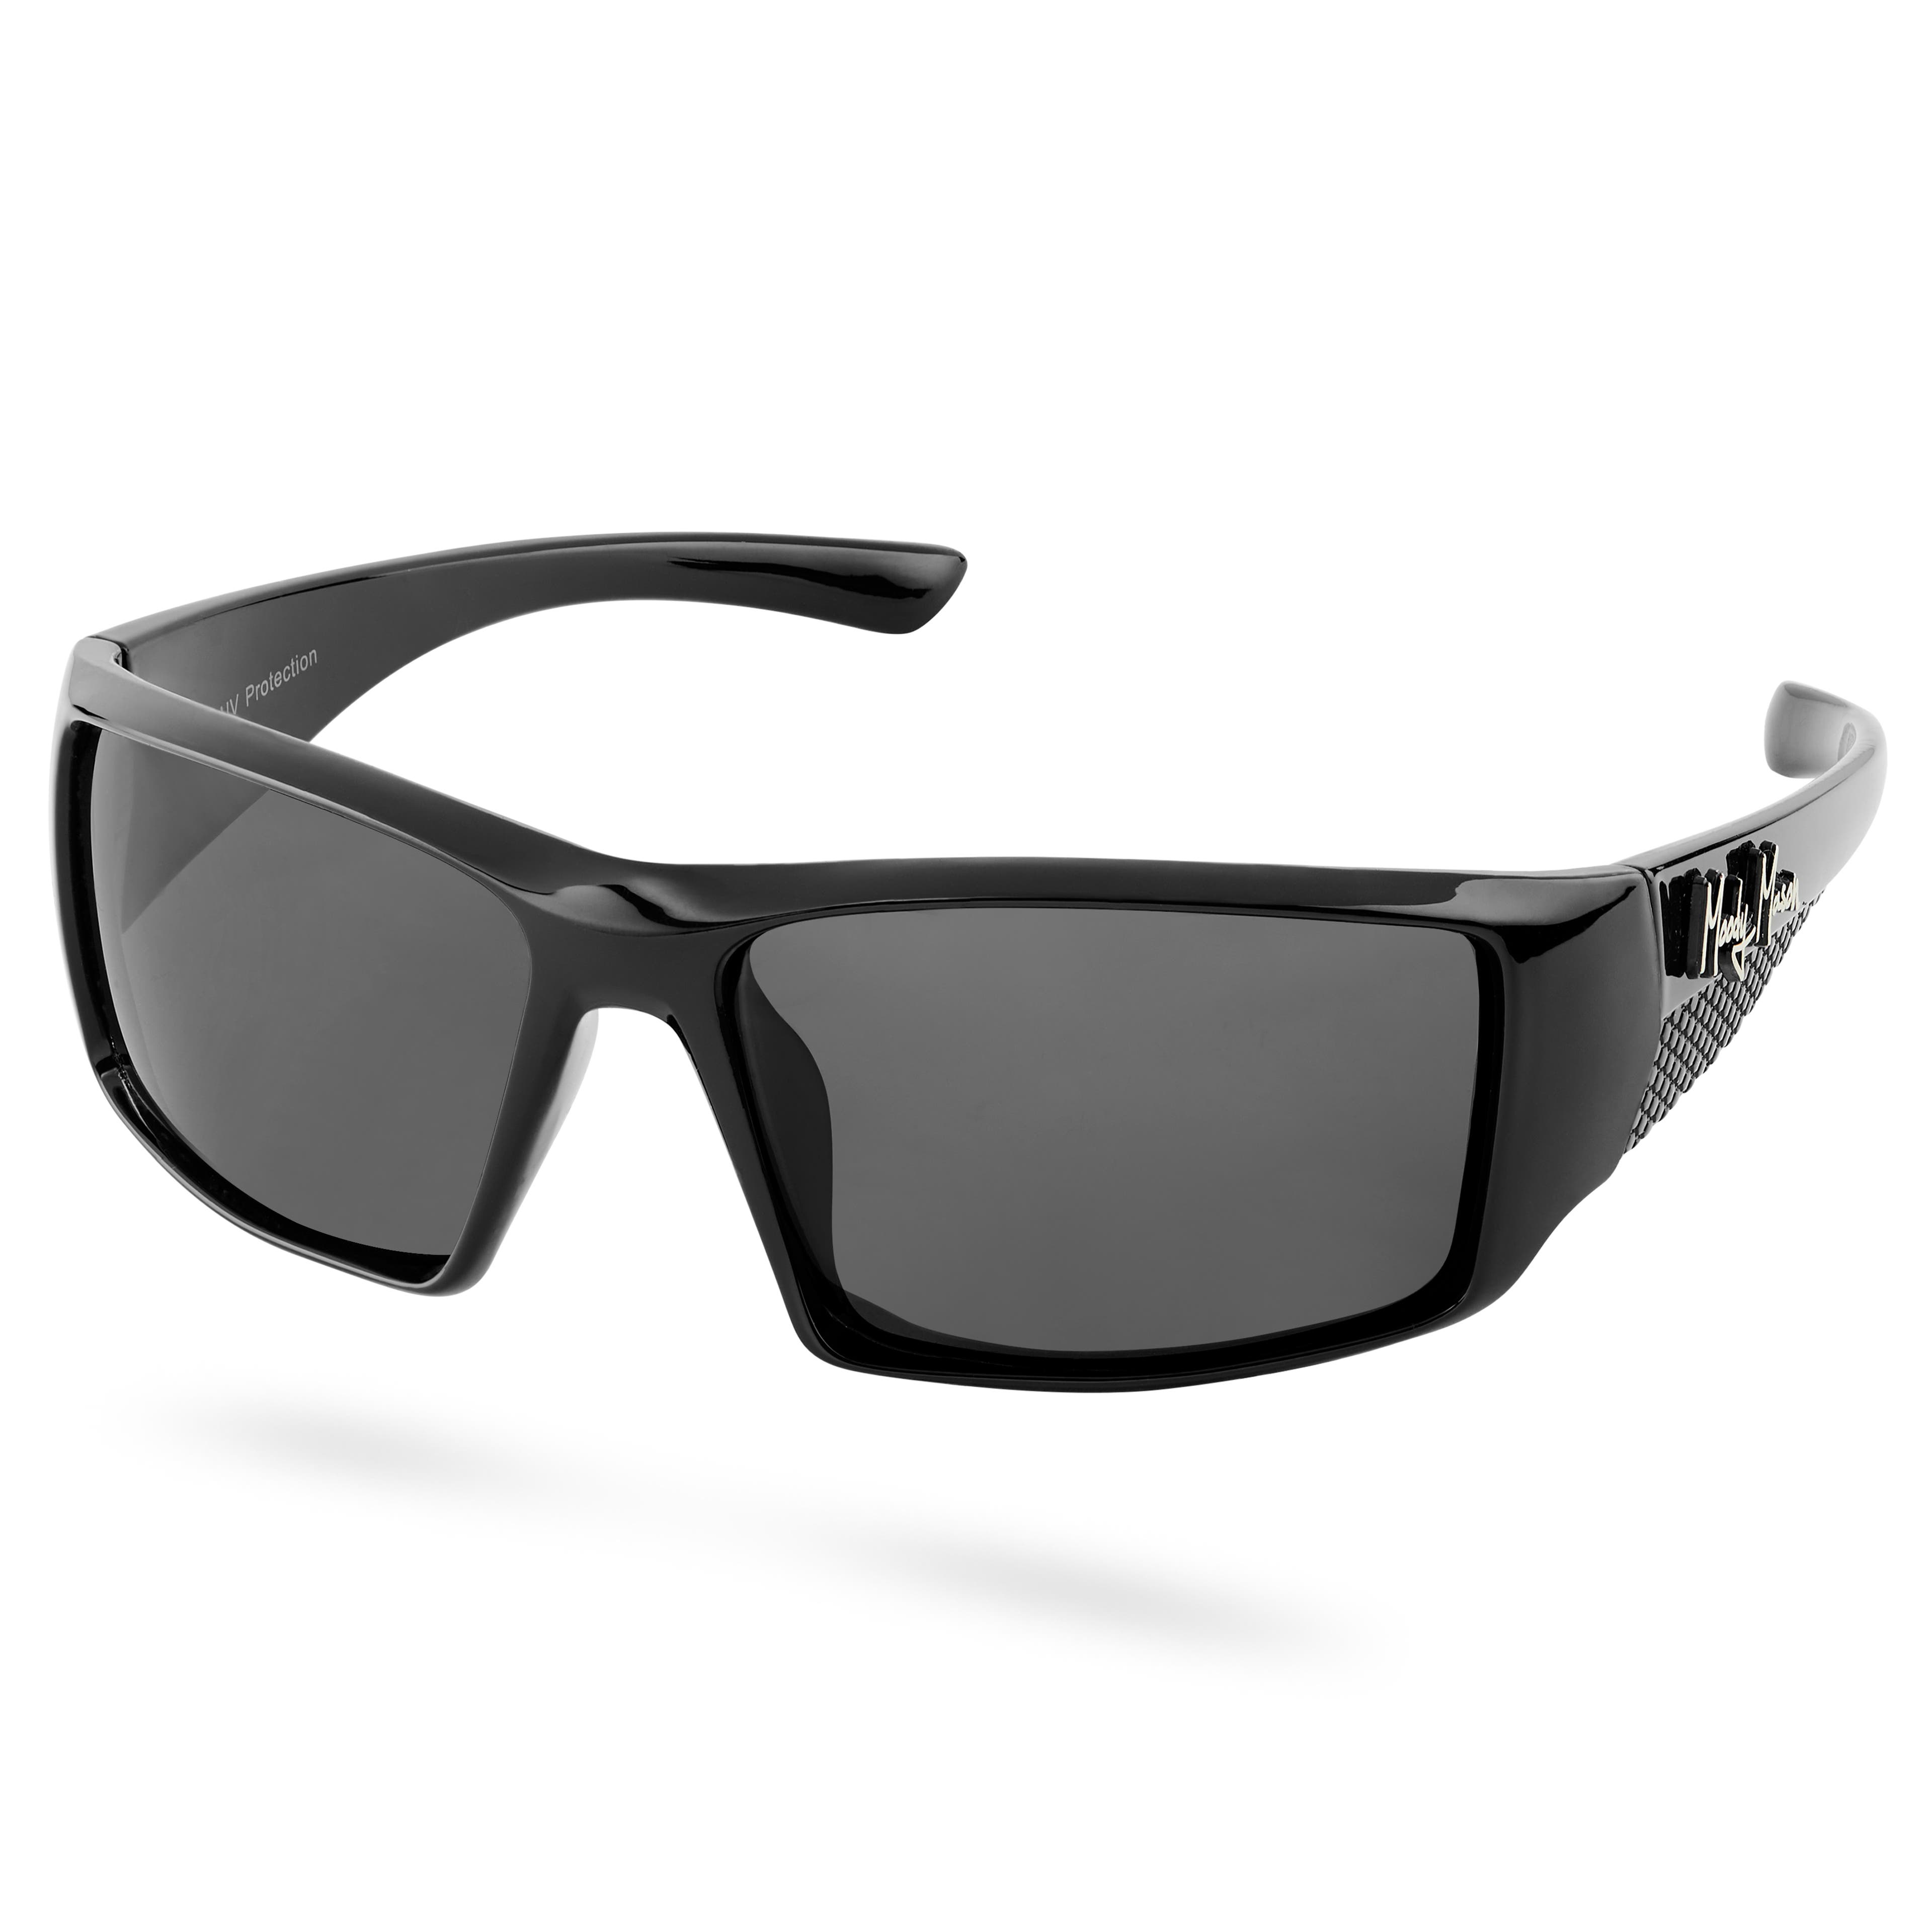 Czarno-szare polaryzacyjne okulary przeciwsłoneczne Mick Verge – Kategoria 3.5